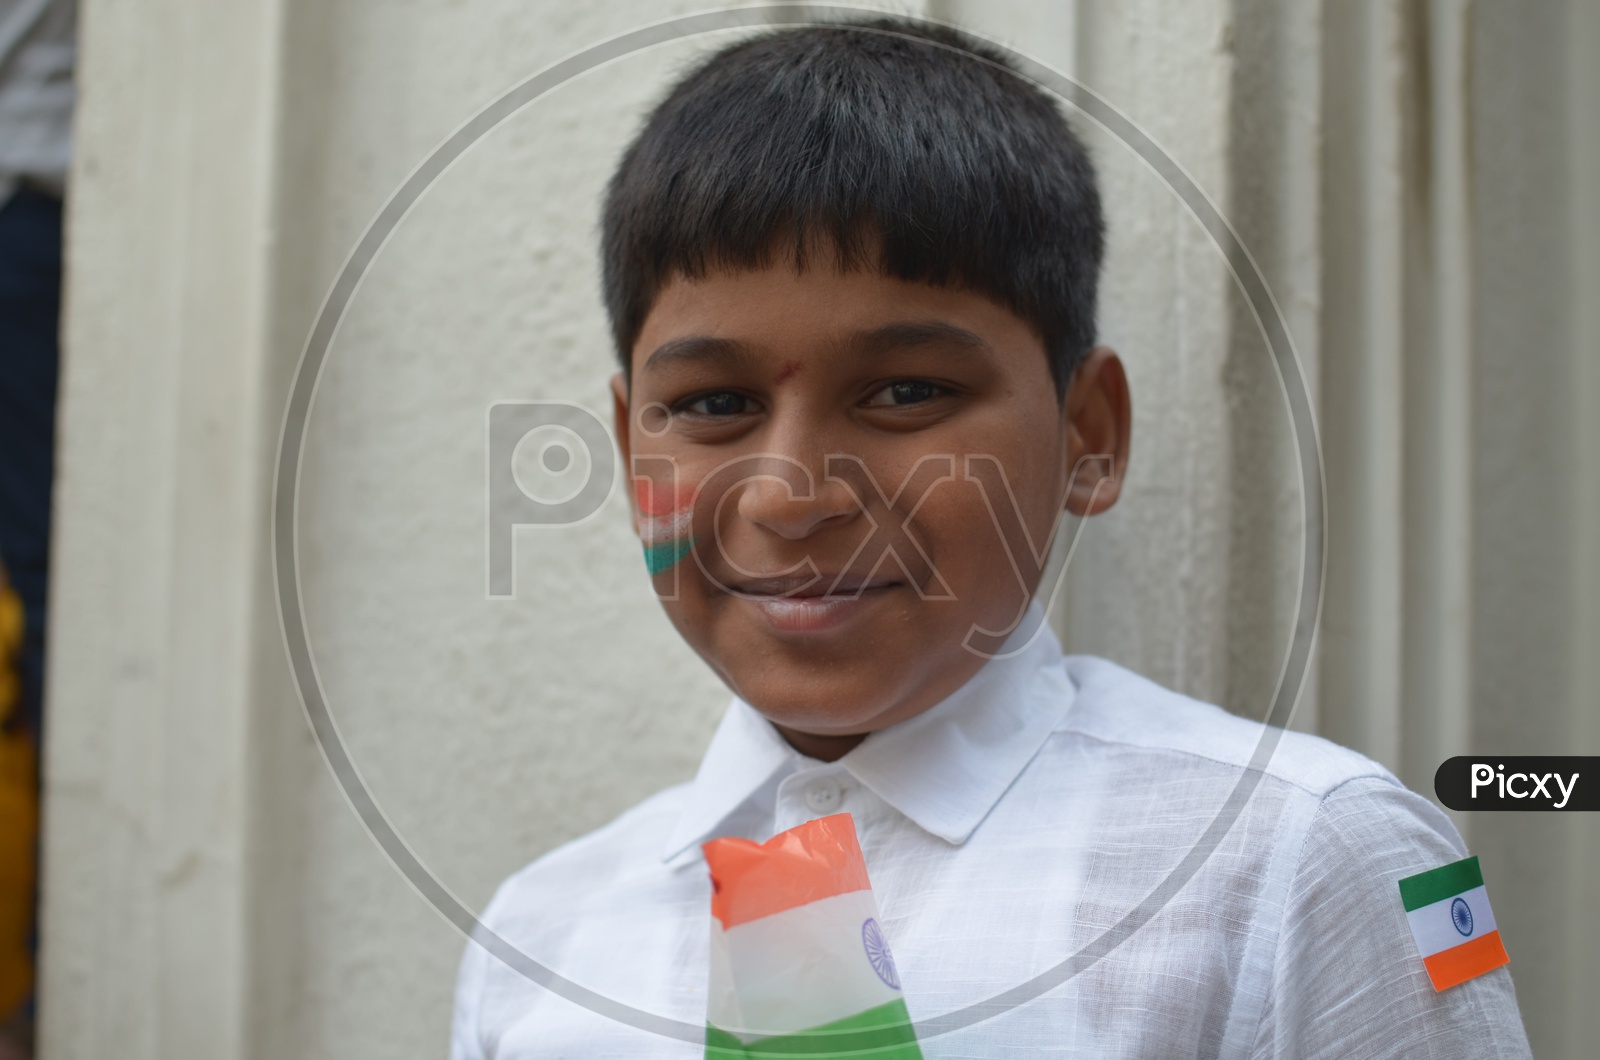 Indian Children Smiling FacesBoy Child Smiling Faces  / Indian Children Smiling Faces / Indian Boy Wearing National Flag on Independece day